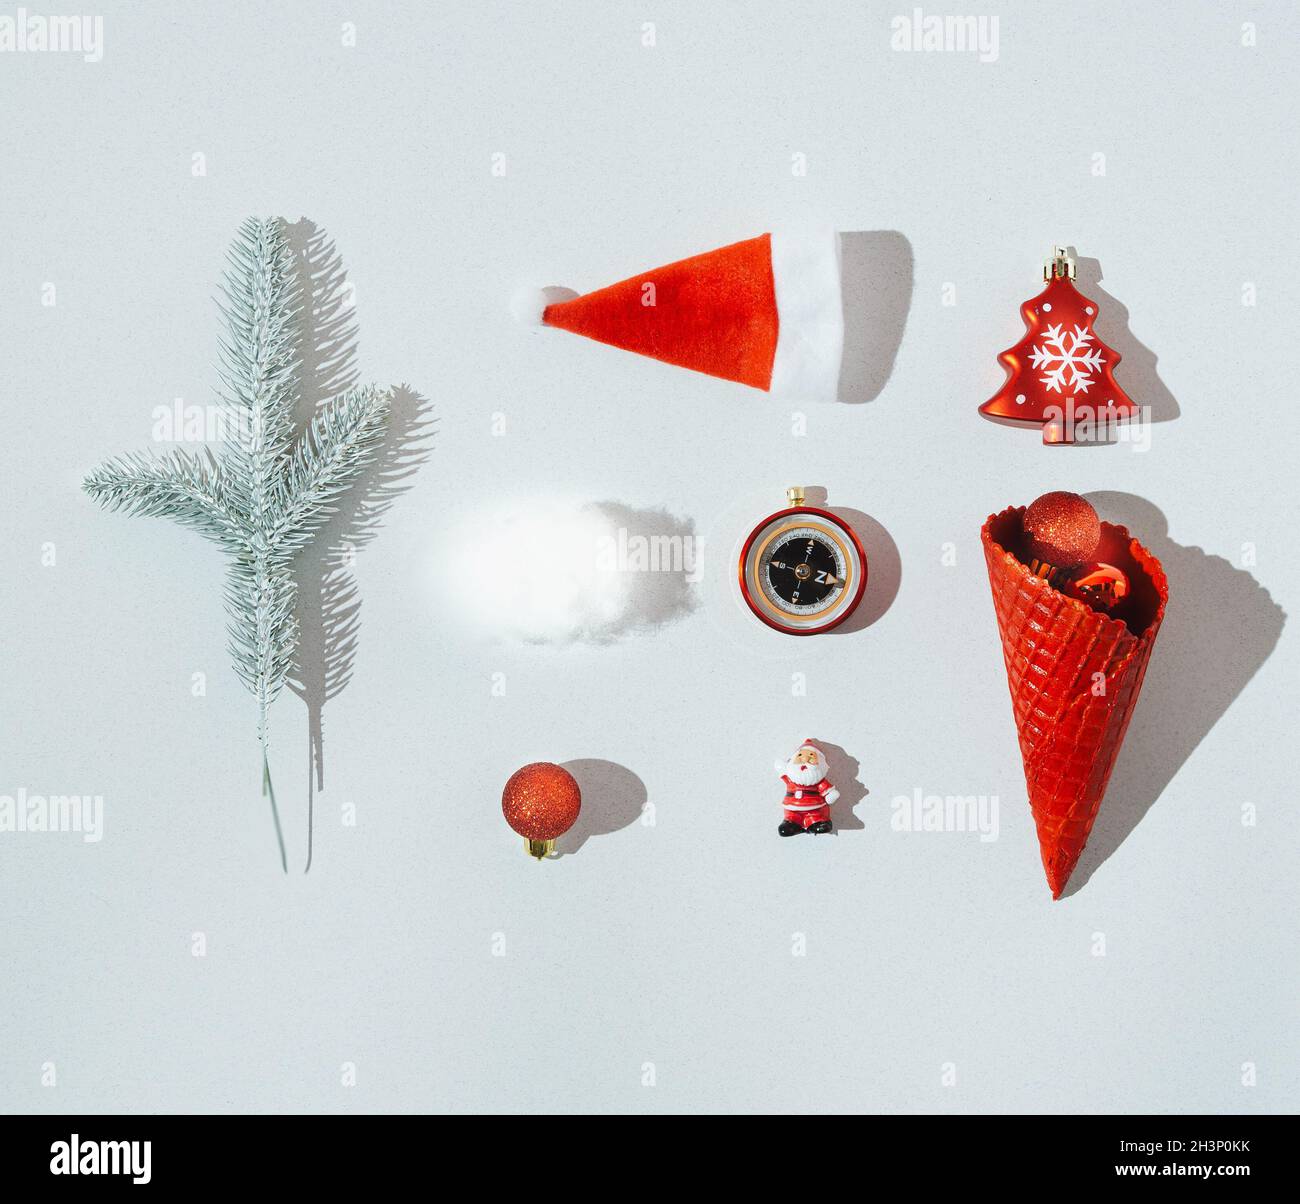 Une infographie de Noël ou du nouvel an composée d'un chapeau de Père Noël, d'un arbre de Noël rouge, d'un cône de glace rouge avec des boules, d'un ballon rouge, d'un petit Père Noël, d'une com Banque D'Images